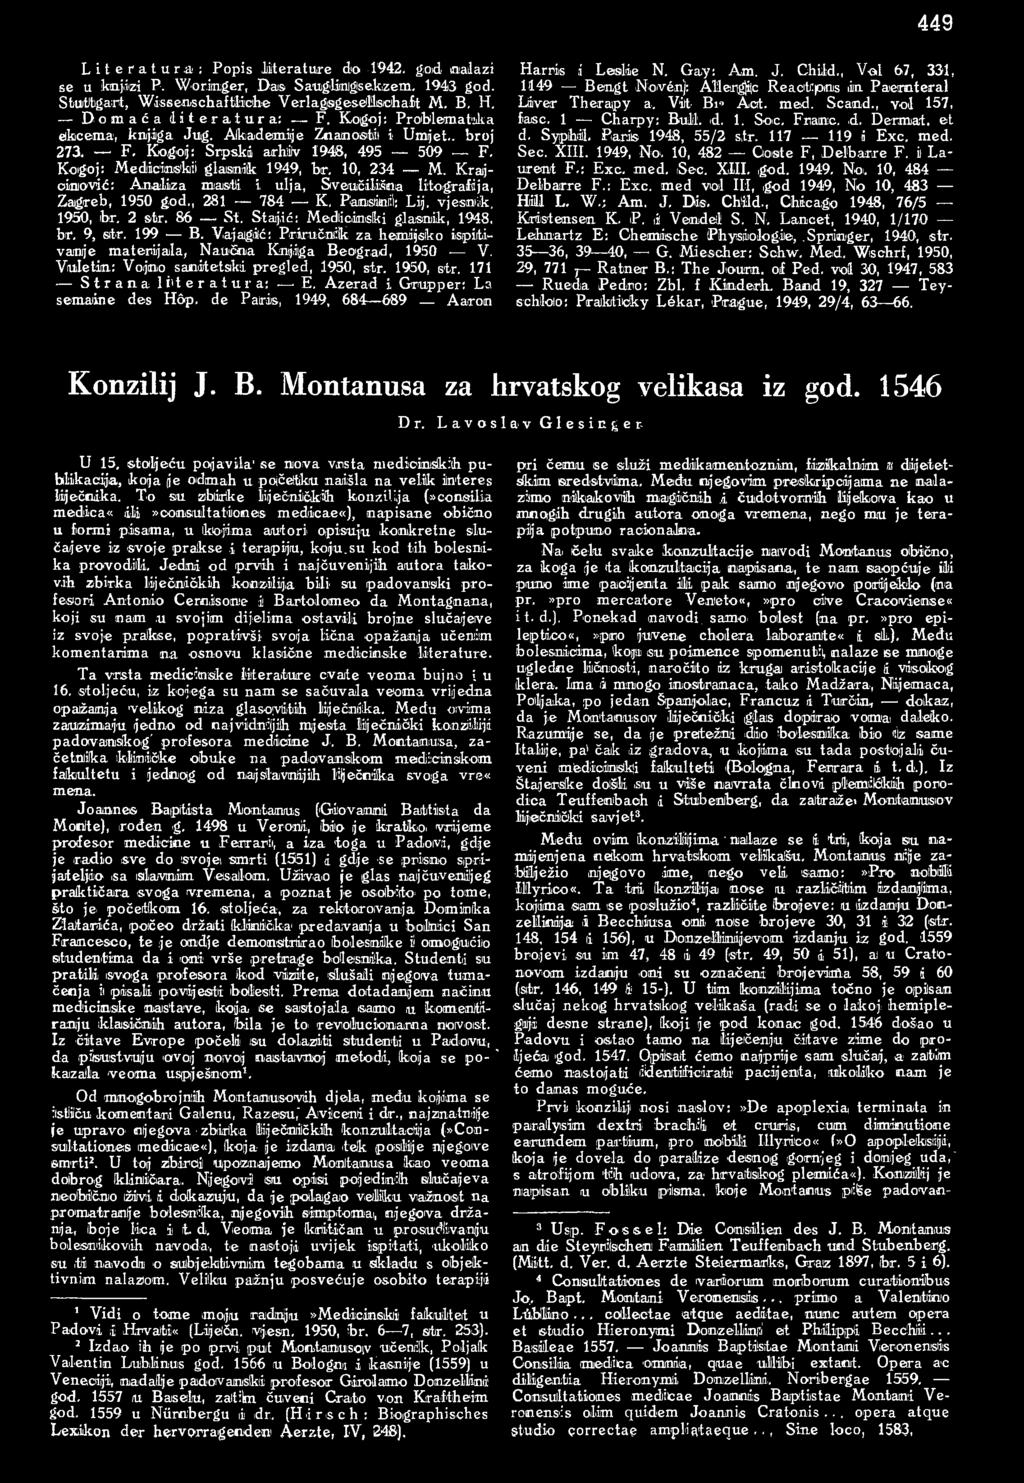 Krajoinović: Analiza masti i ulja, Sveučilišna litografija, Zagreb, 1950 god., 281 784 K, Banisiinfl: Lij. vjesnik. 1950, br. 2 str. 86 St. Stajić: Medlicimiski glasnik, 1948, br. 9, str. 199 B.